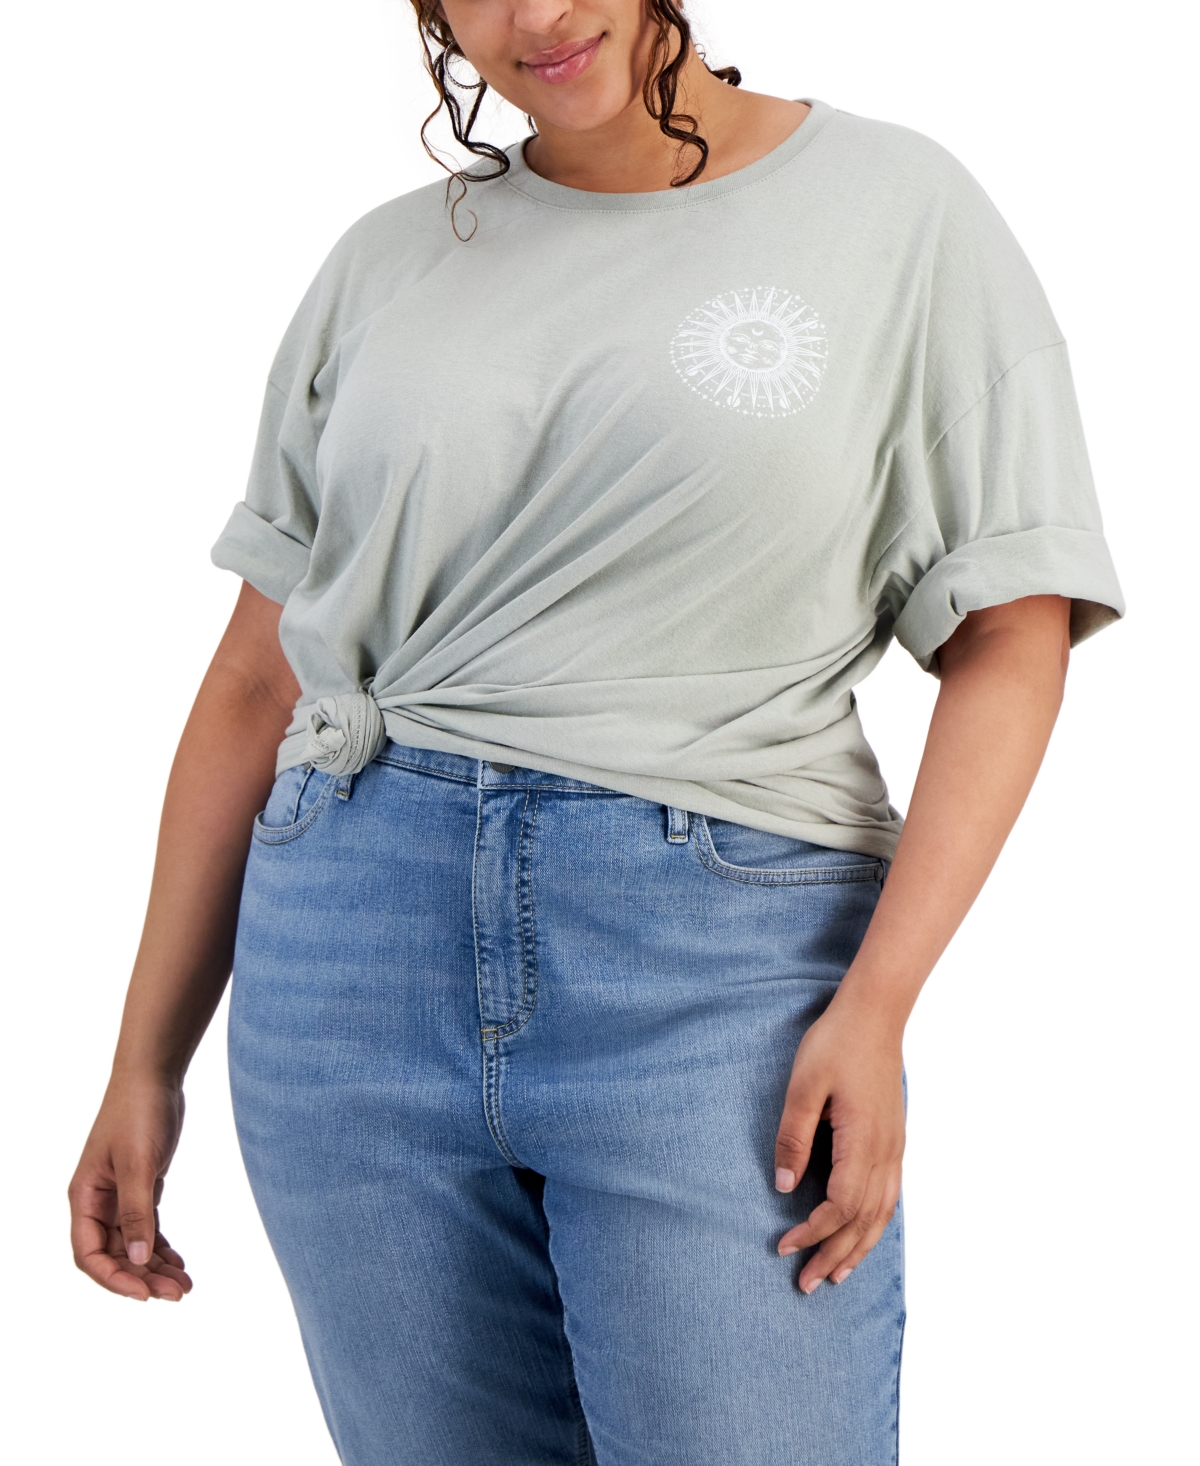 Plus Size Keep Your Dreams Alive Boyfriend T-Shirt - Desert Sage